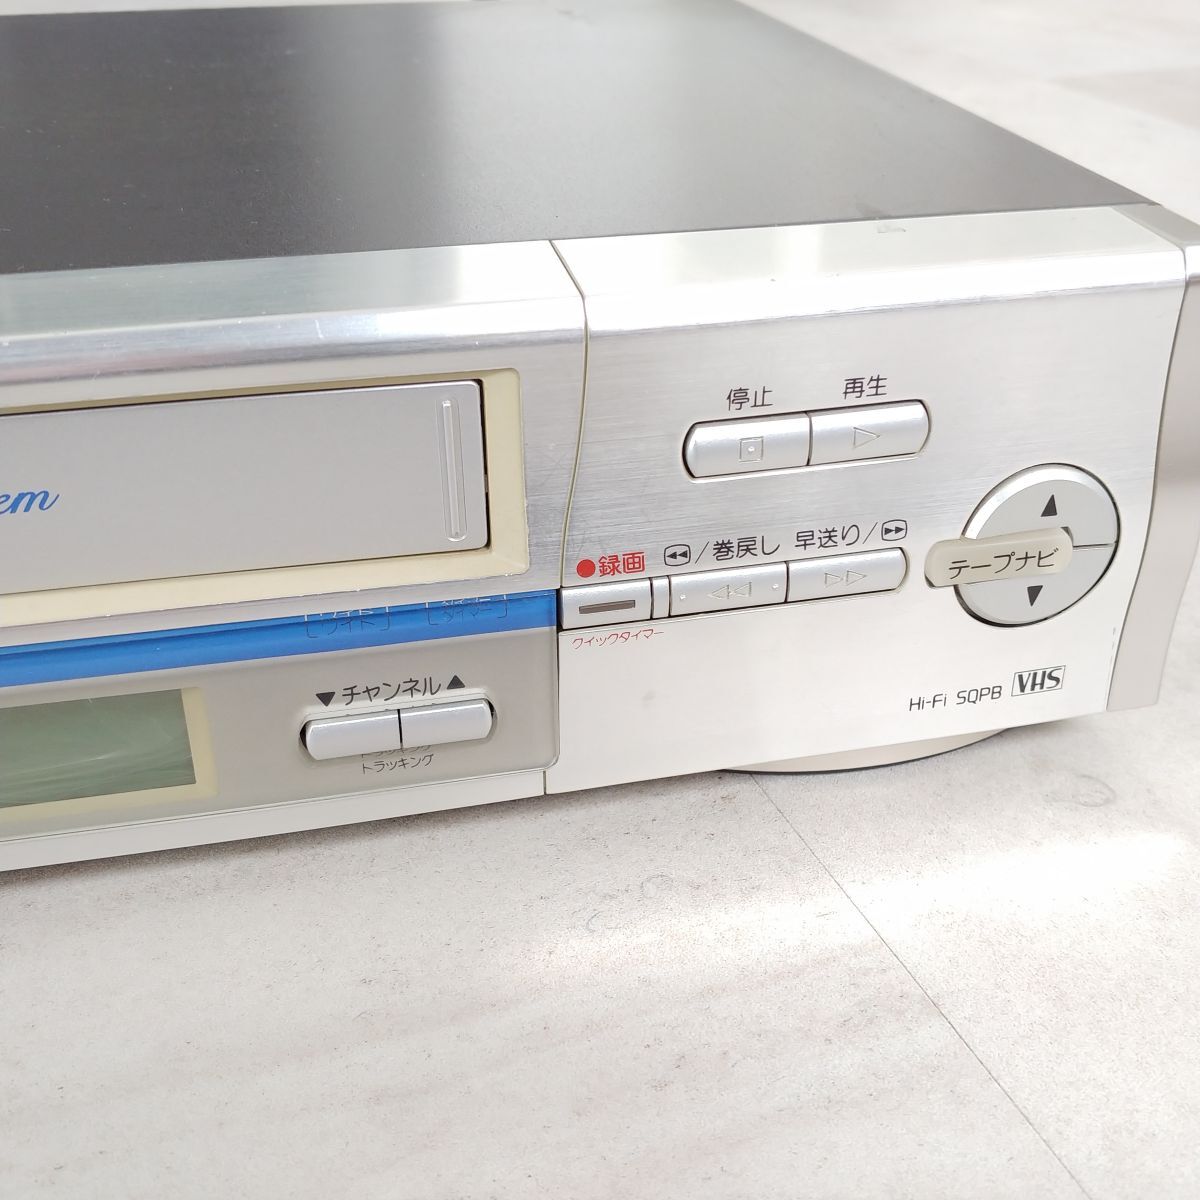 [* рабочее состояние подтверждено *]HITACHI Hitachi VHS Hi-Fi видео кассета магнитофон 7B-FV210 видеодека оборудование для работы с изображениями 2000 год производства 1 иен старт #747